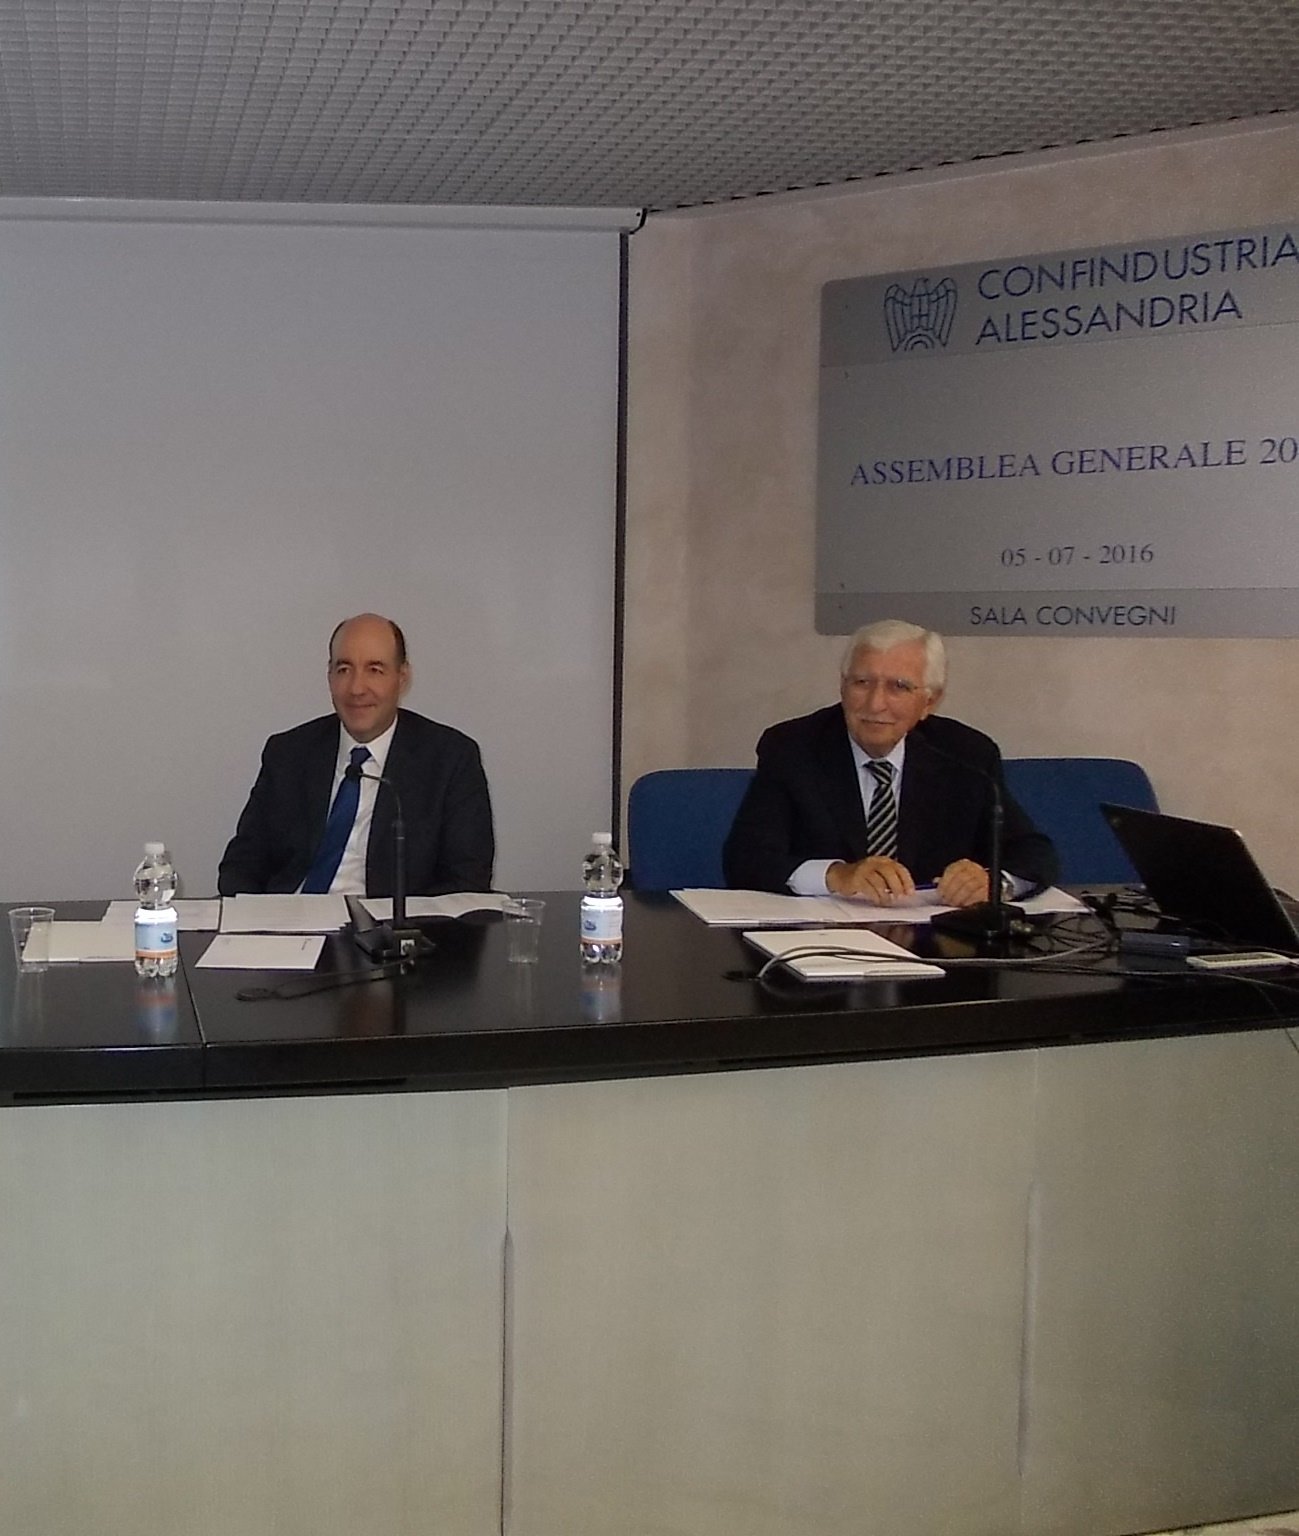 Confindustria Alessandria dice “sì” all’aggregazione con Novara a Vercelli